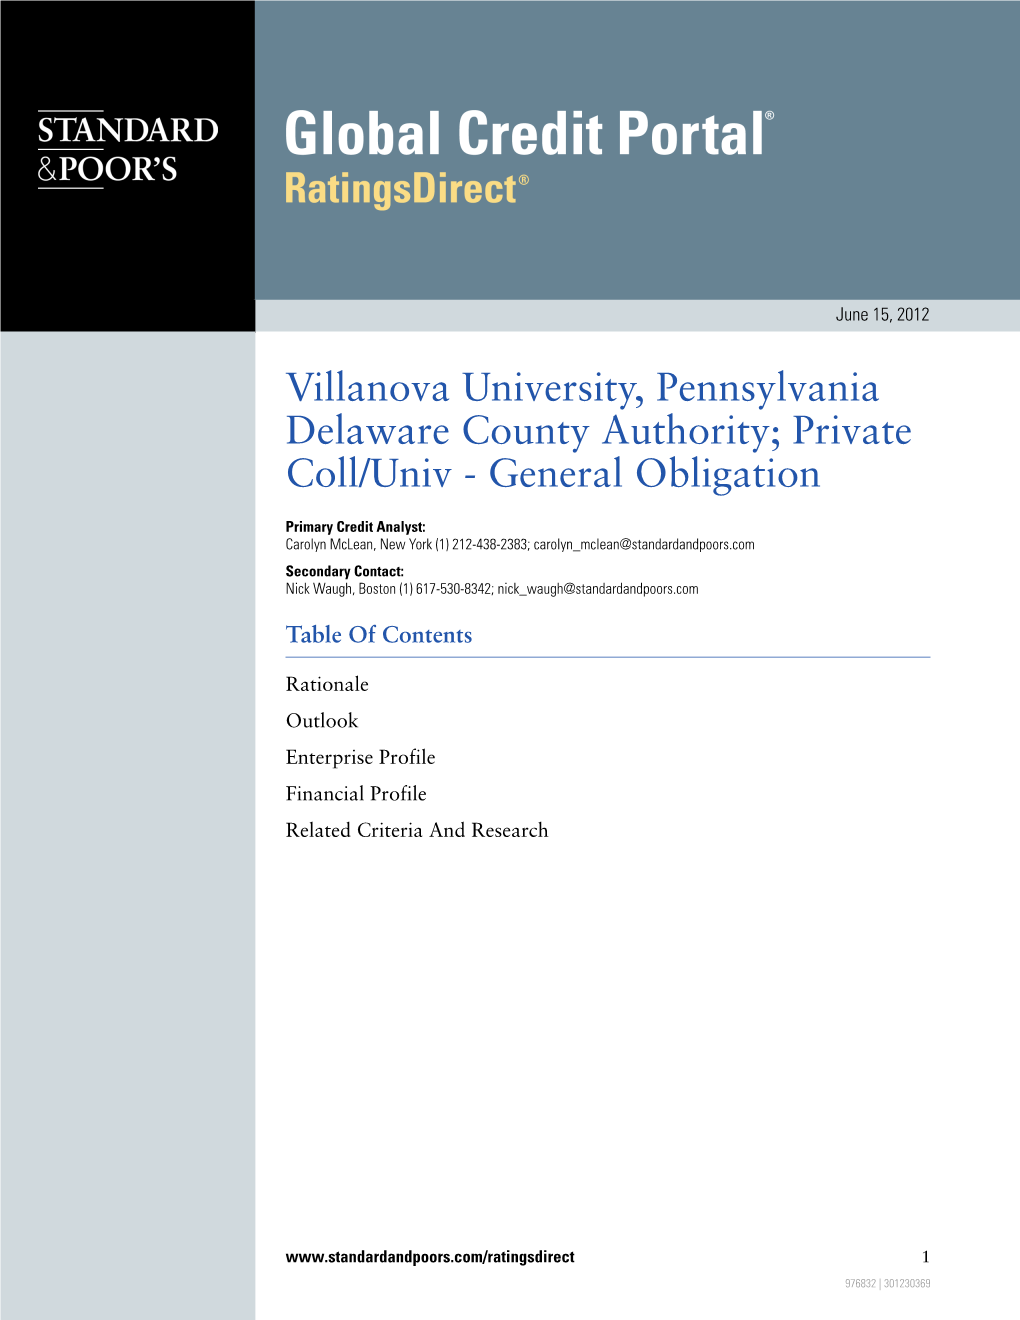 Private Coll/Univ - General Obligation